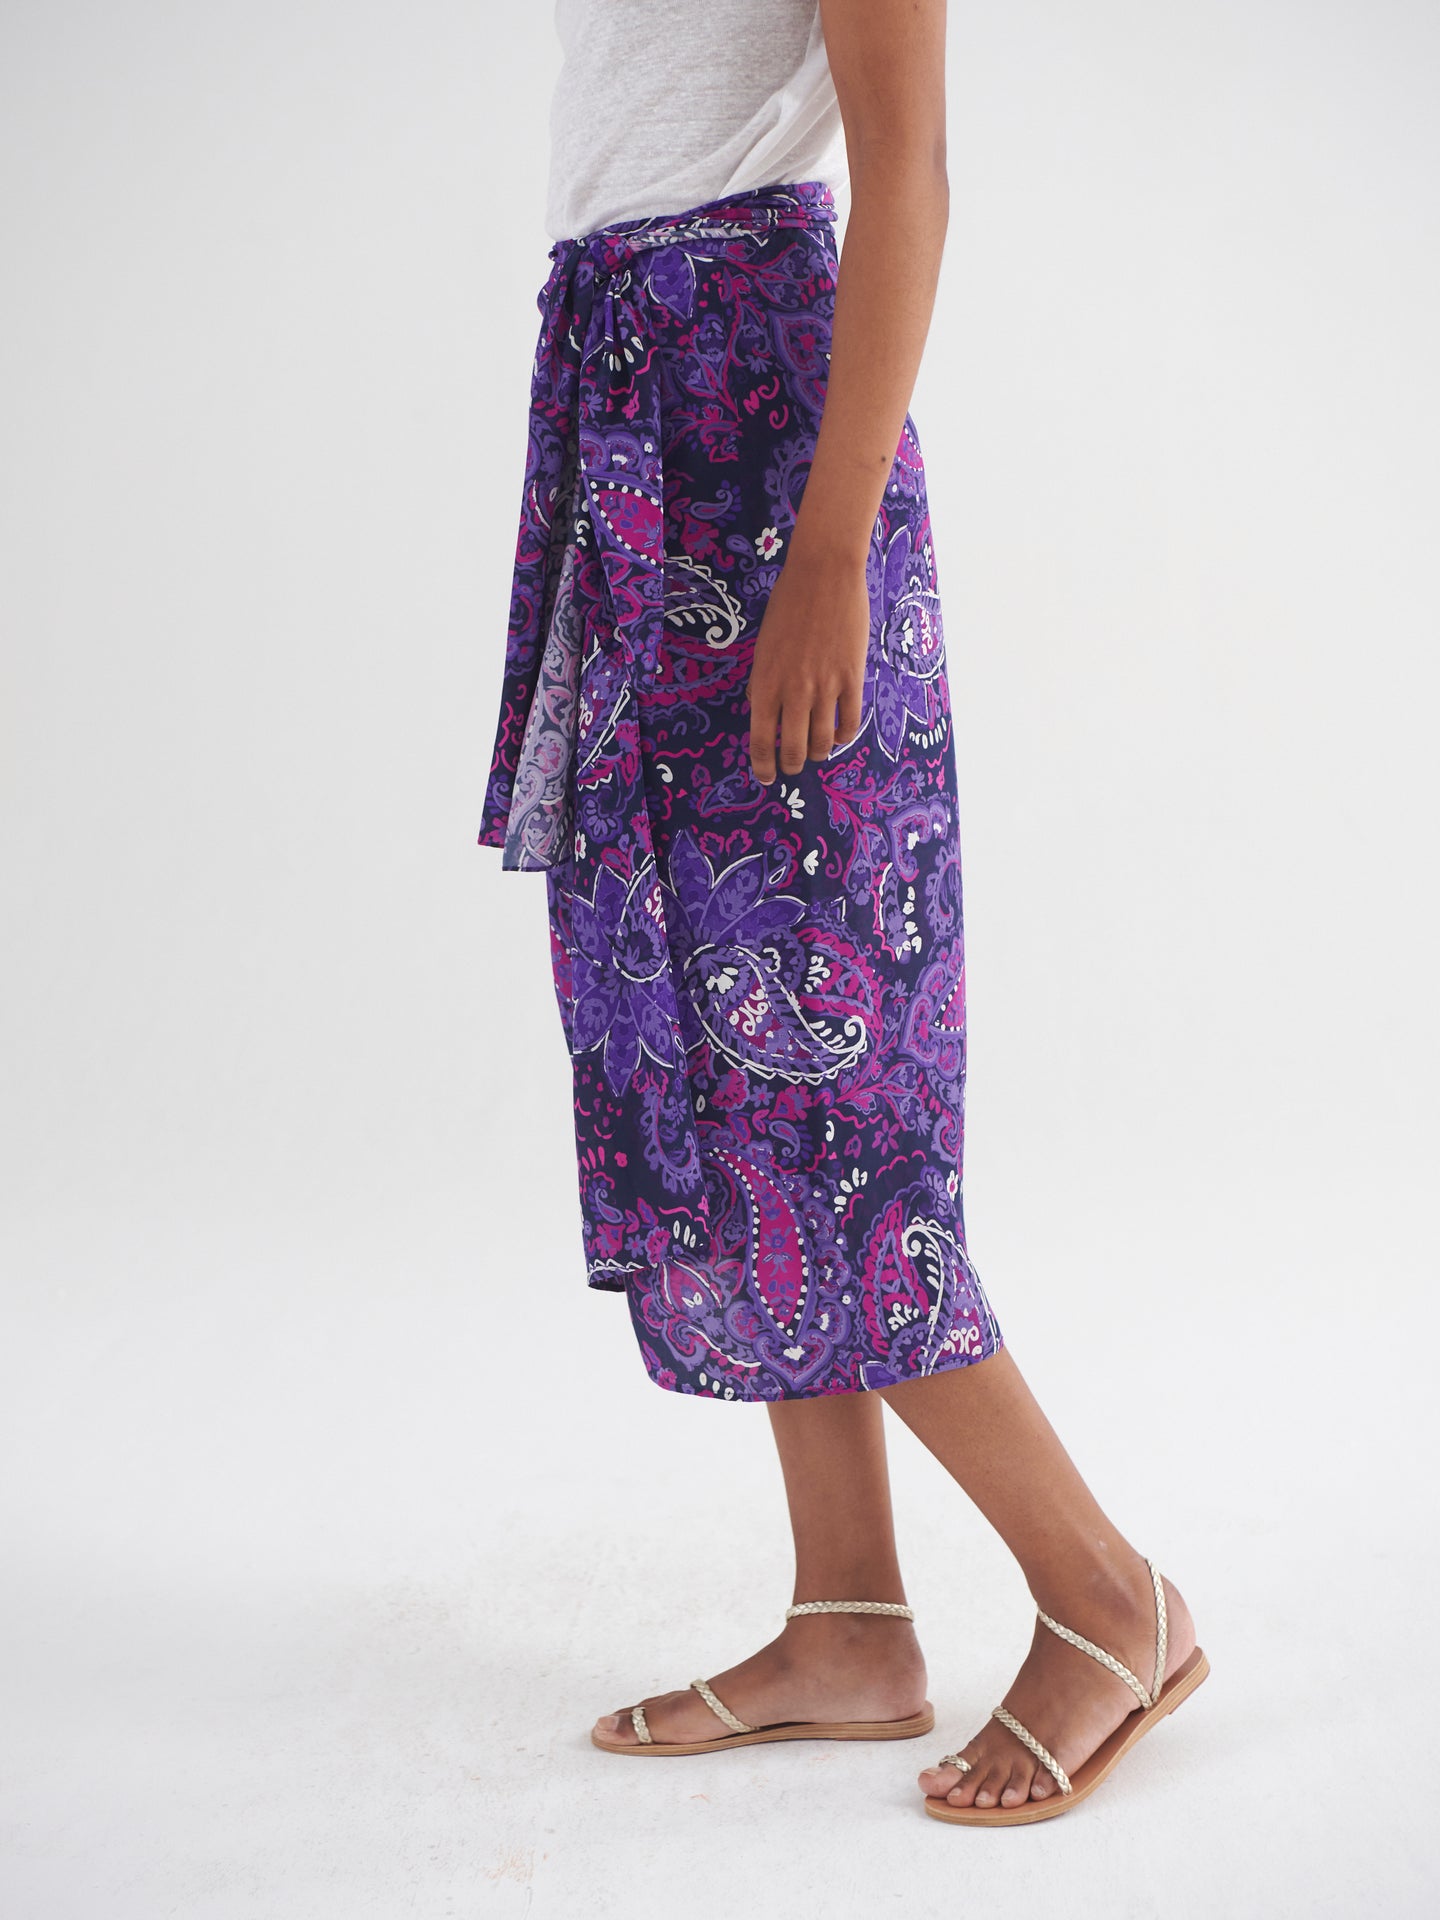 Himari silk giant painterly paisley skirt